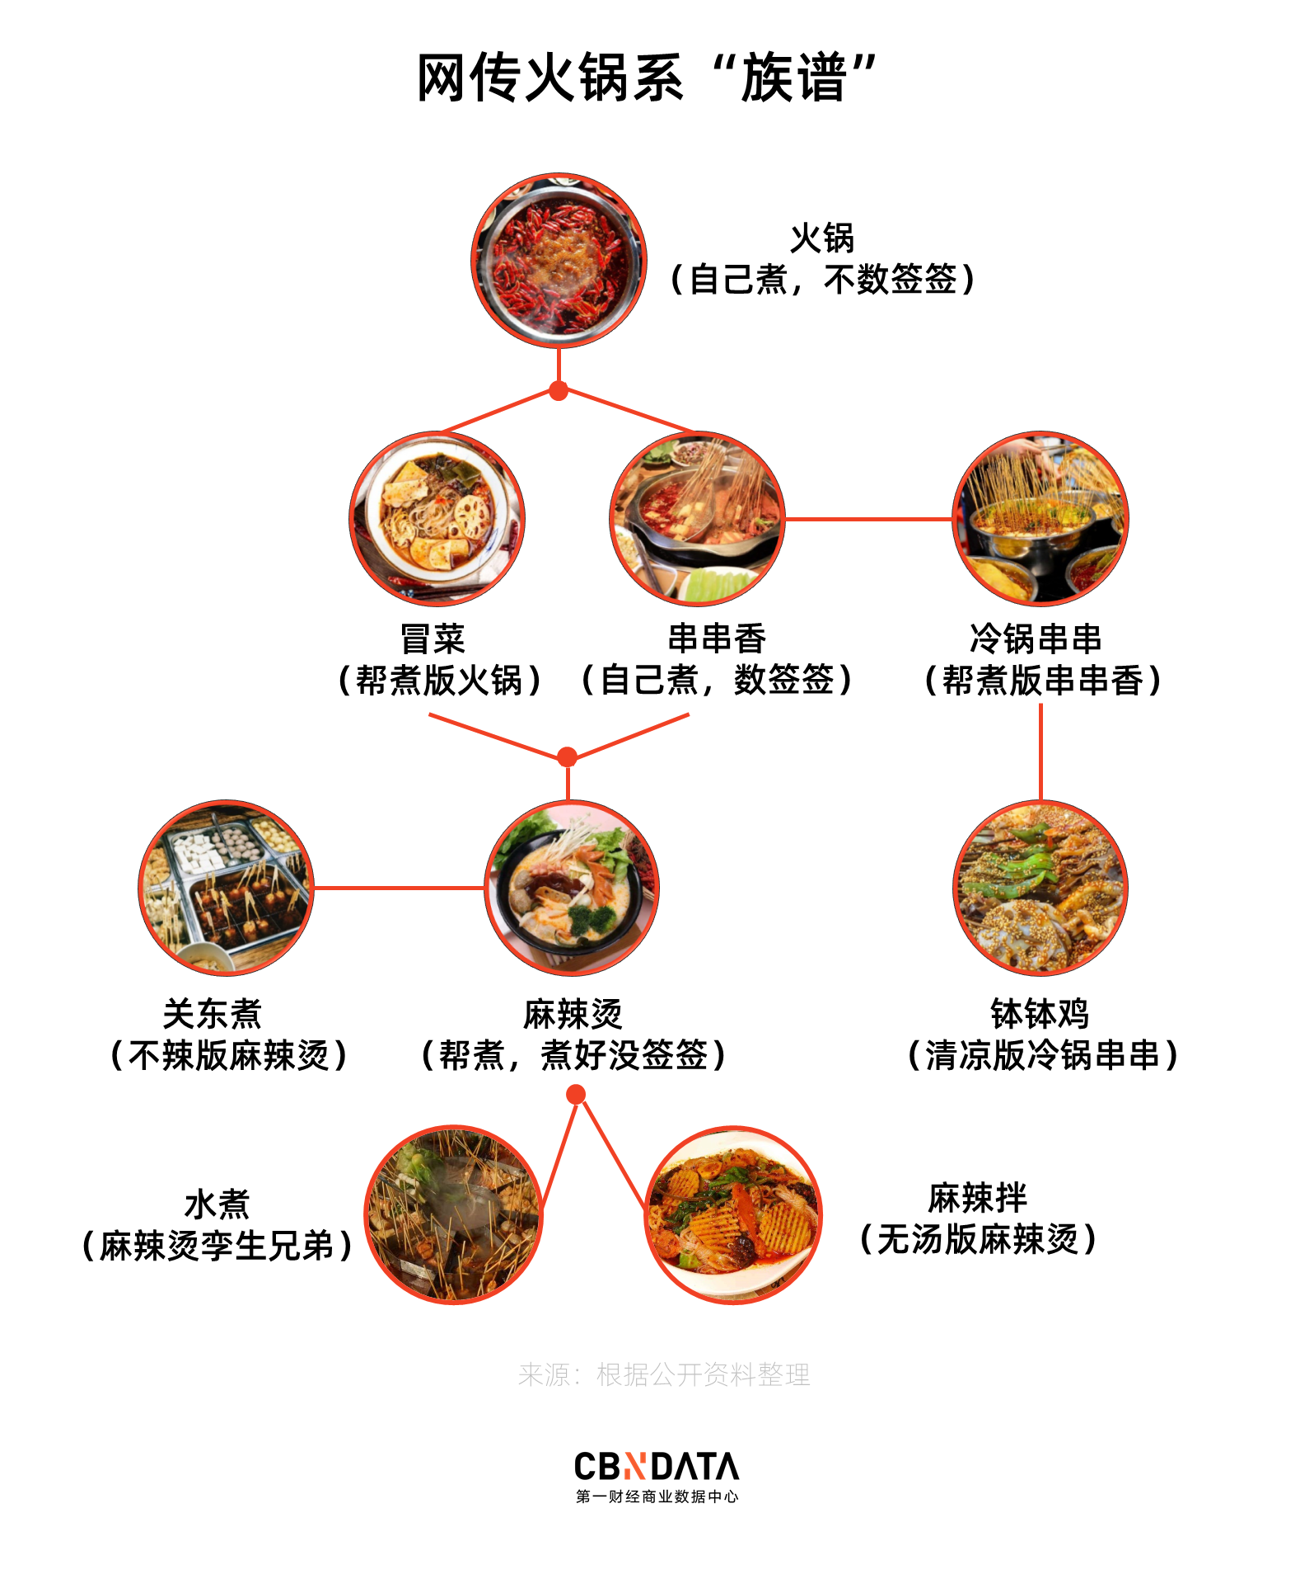 族谱以火锅为祖宗,与火锅烹煮形式最接近的两种变体是冒菜和串串香